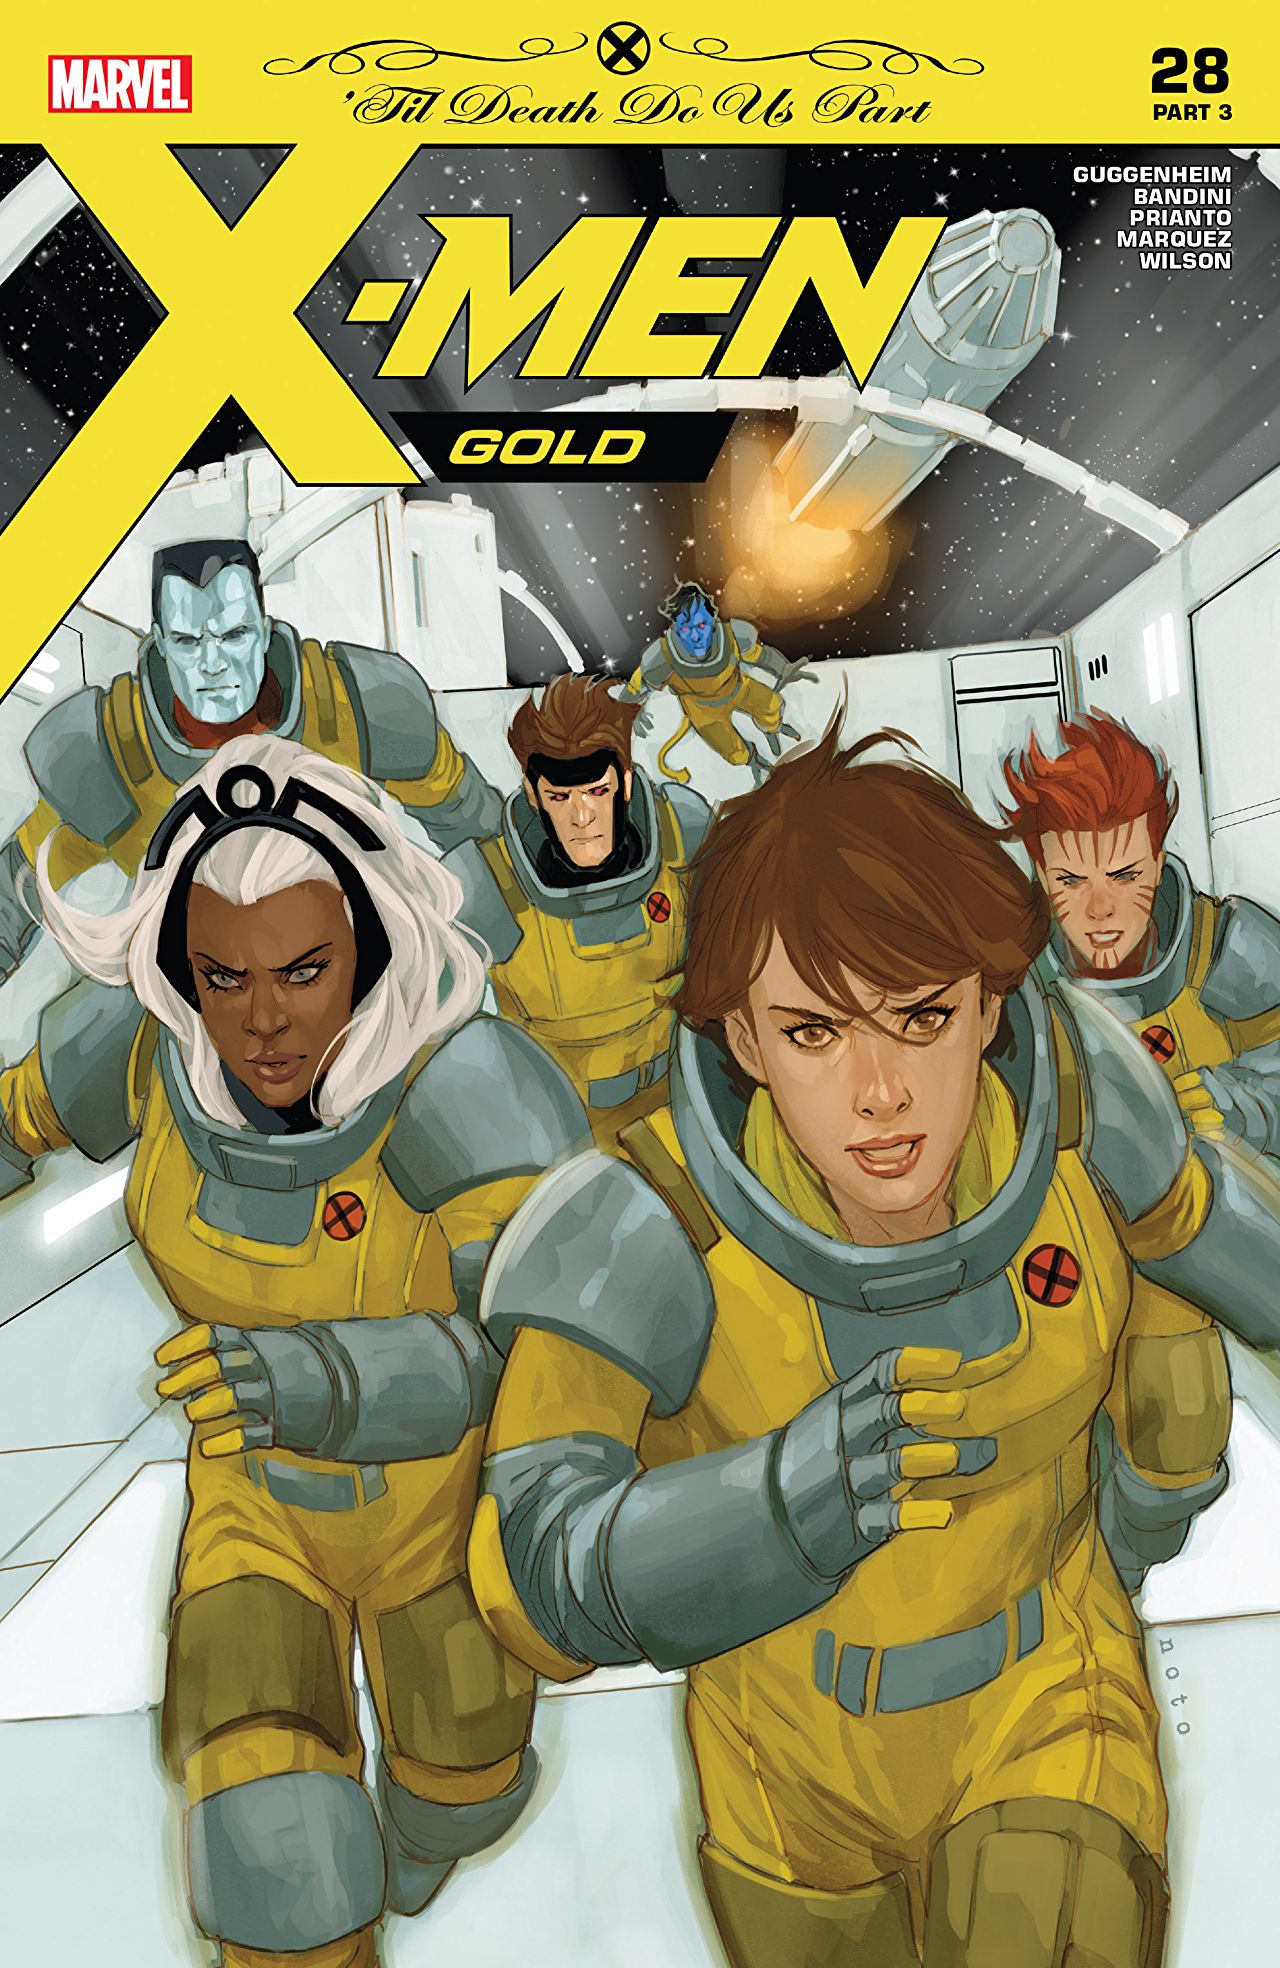 Melhores do Mundo - X Men Gold 28 Cover